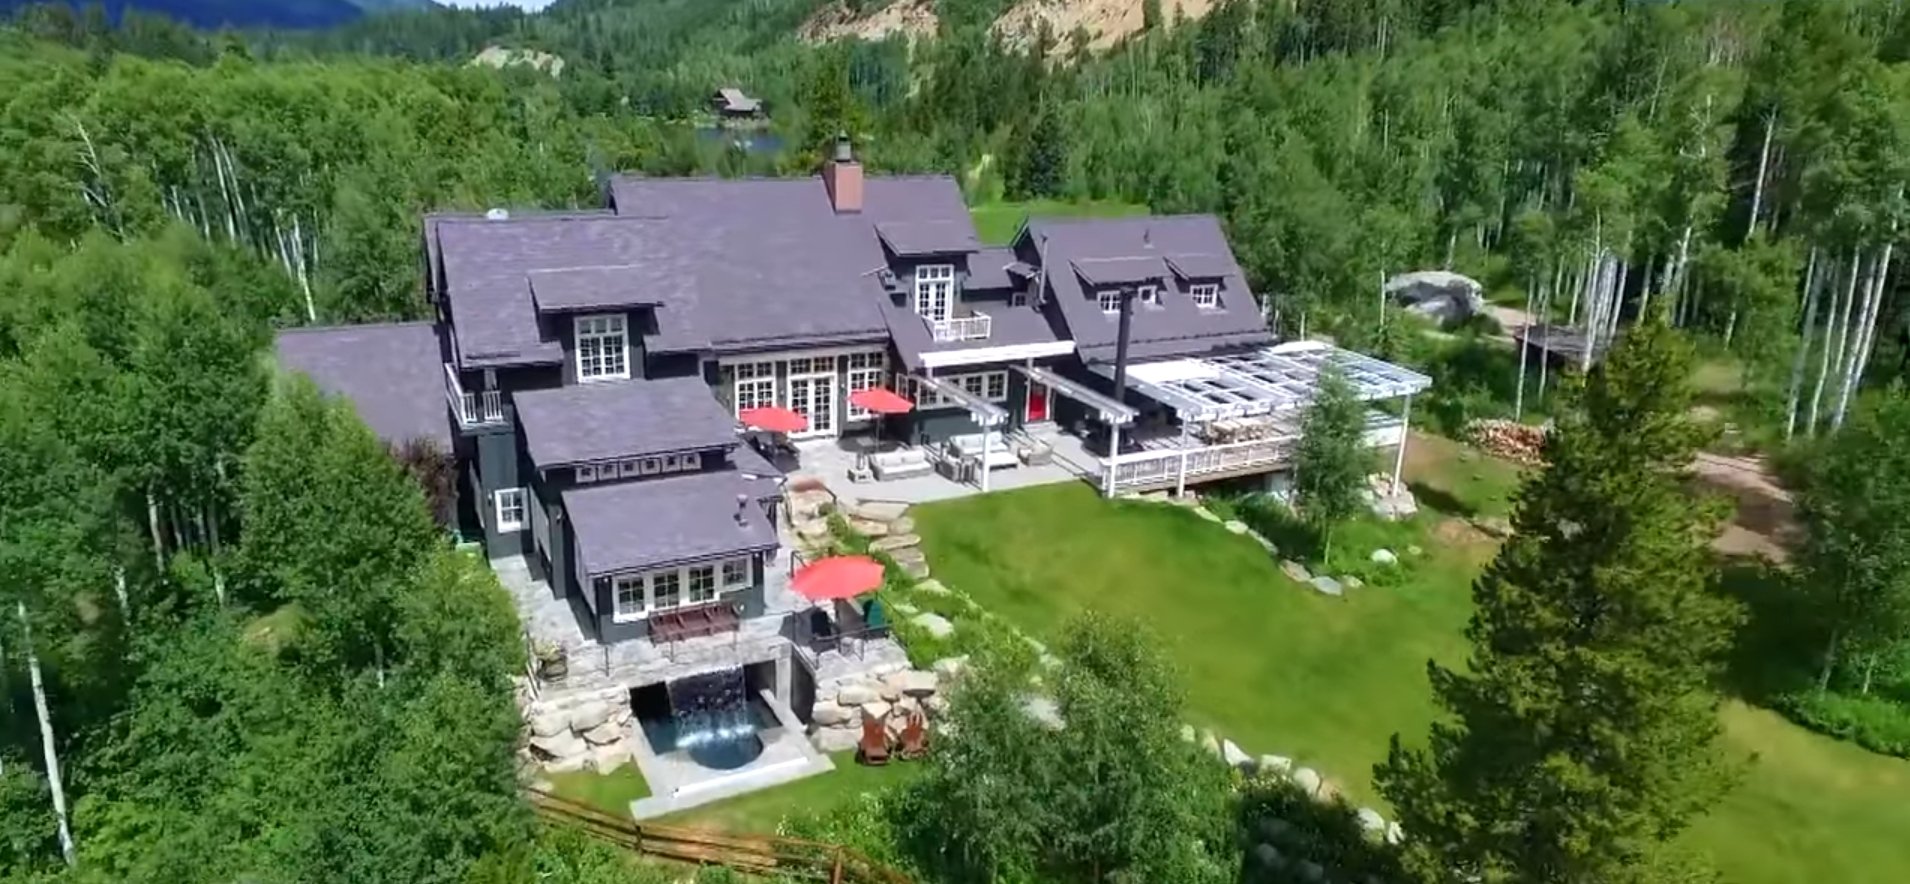 La propriété de Kevin Costner à Aspen, Colorado. | Source : Youtube/CNBC Make It